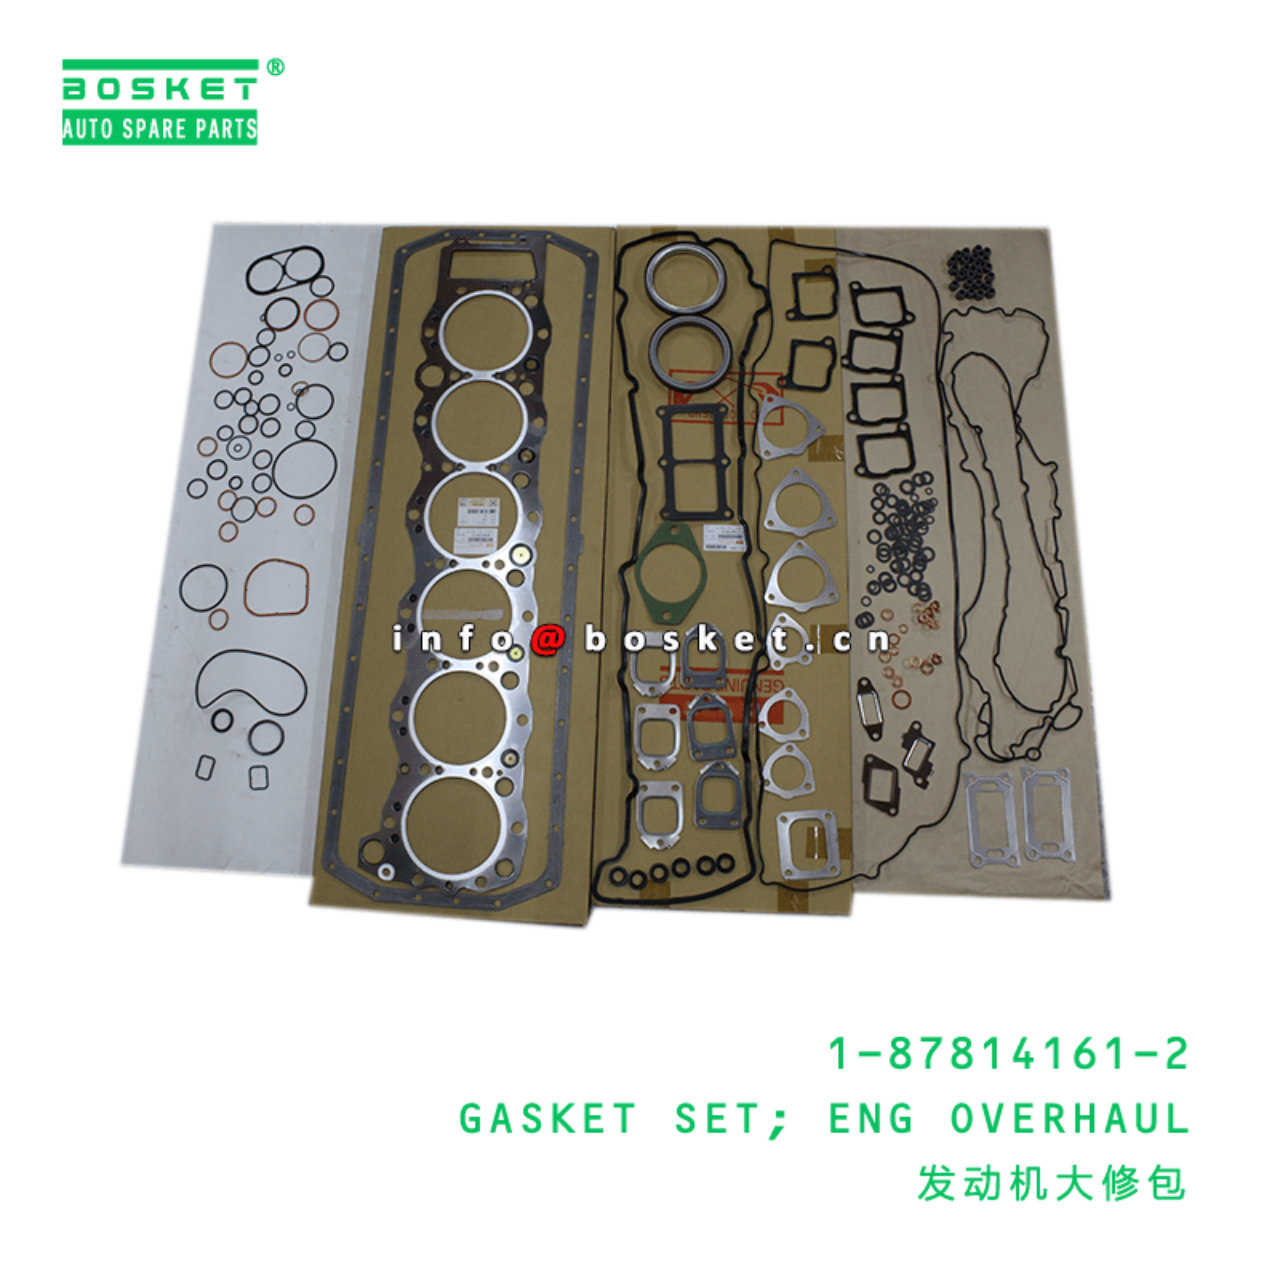 1-87814161-2 Engine Overhaul Gasket Set Suitable for ISUZU CYZ 1878141612